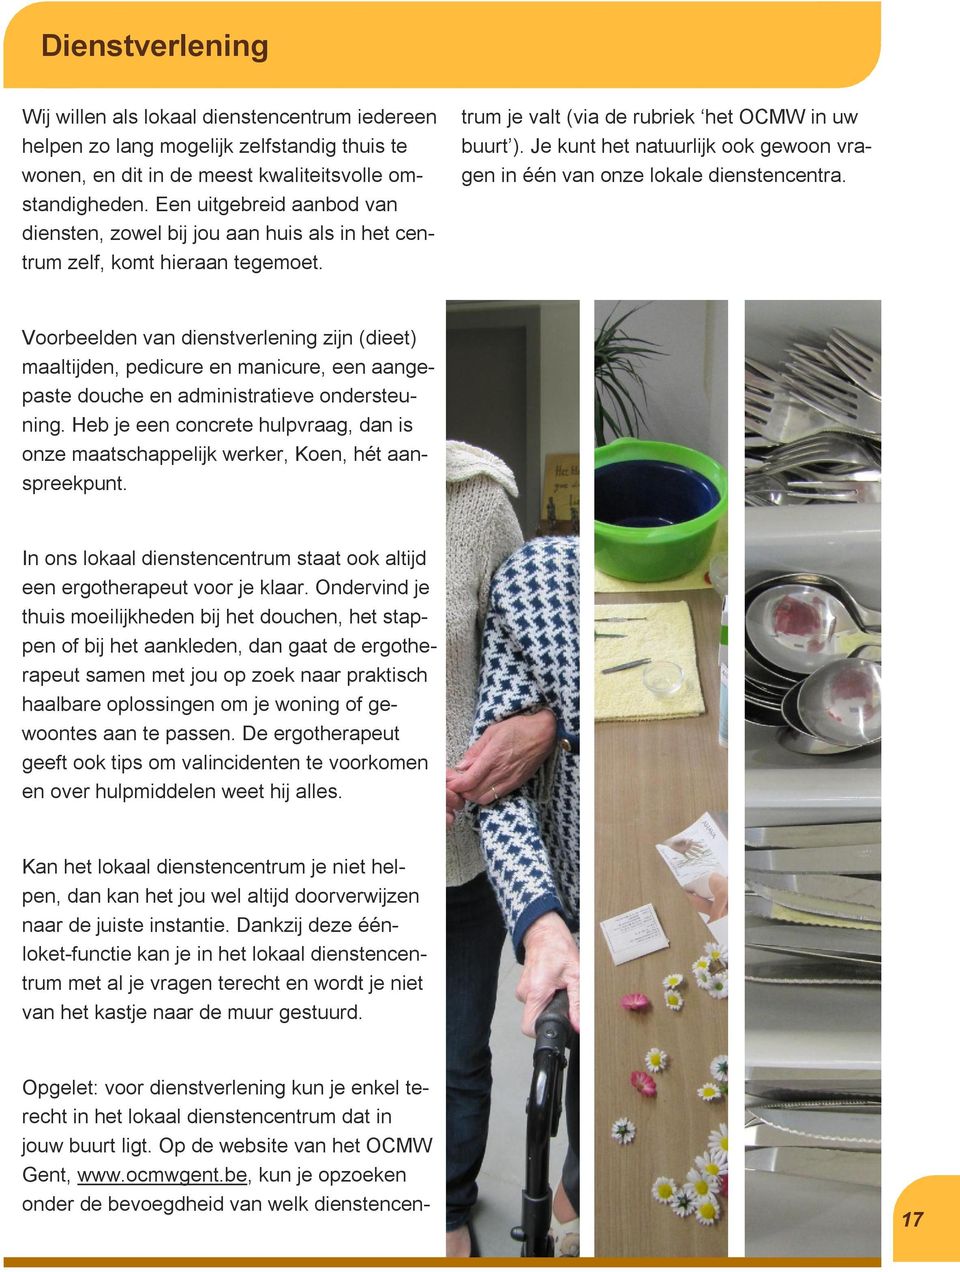 Opgelet: voor dienstverlening kun je enkel terecht in het lokaal dienstencentrum dat in jouw buurt ligt. Op de website van het OCMW Gent, www.ocmwgent.